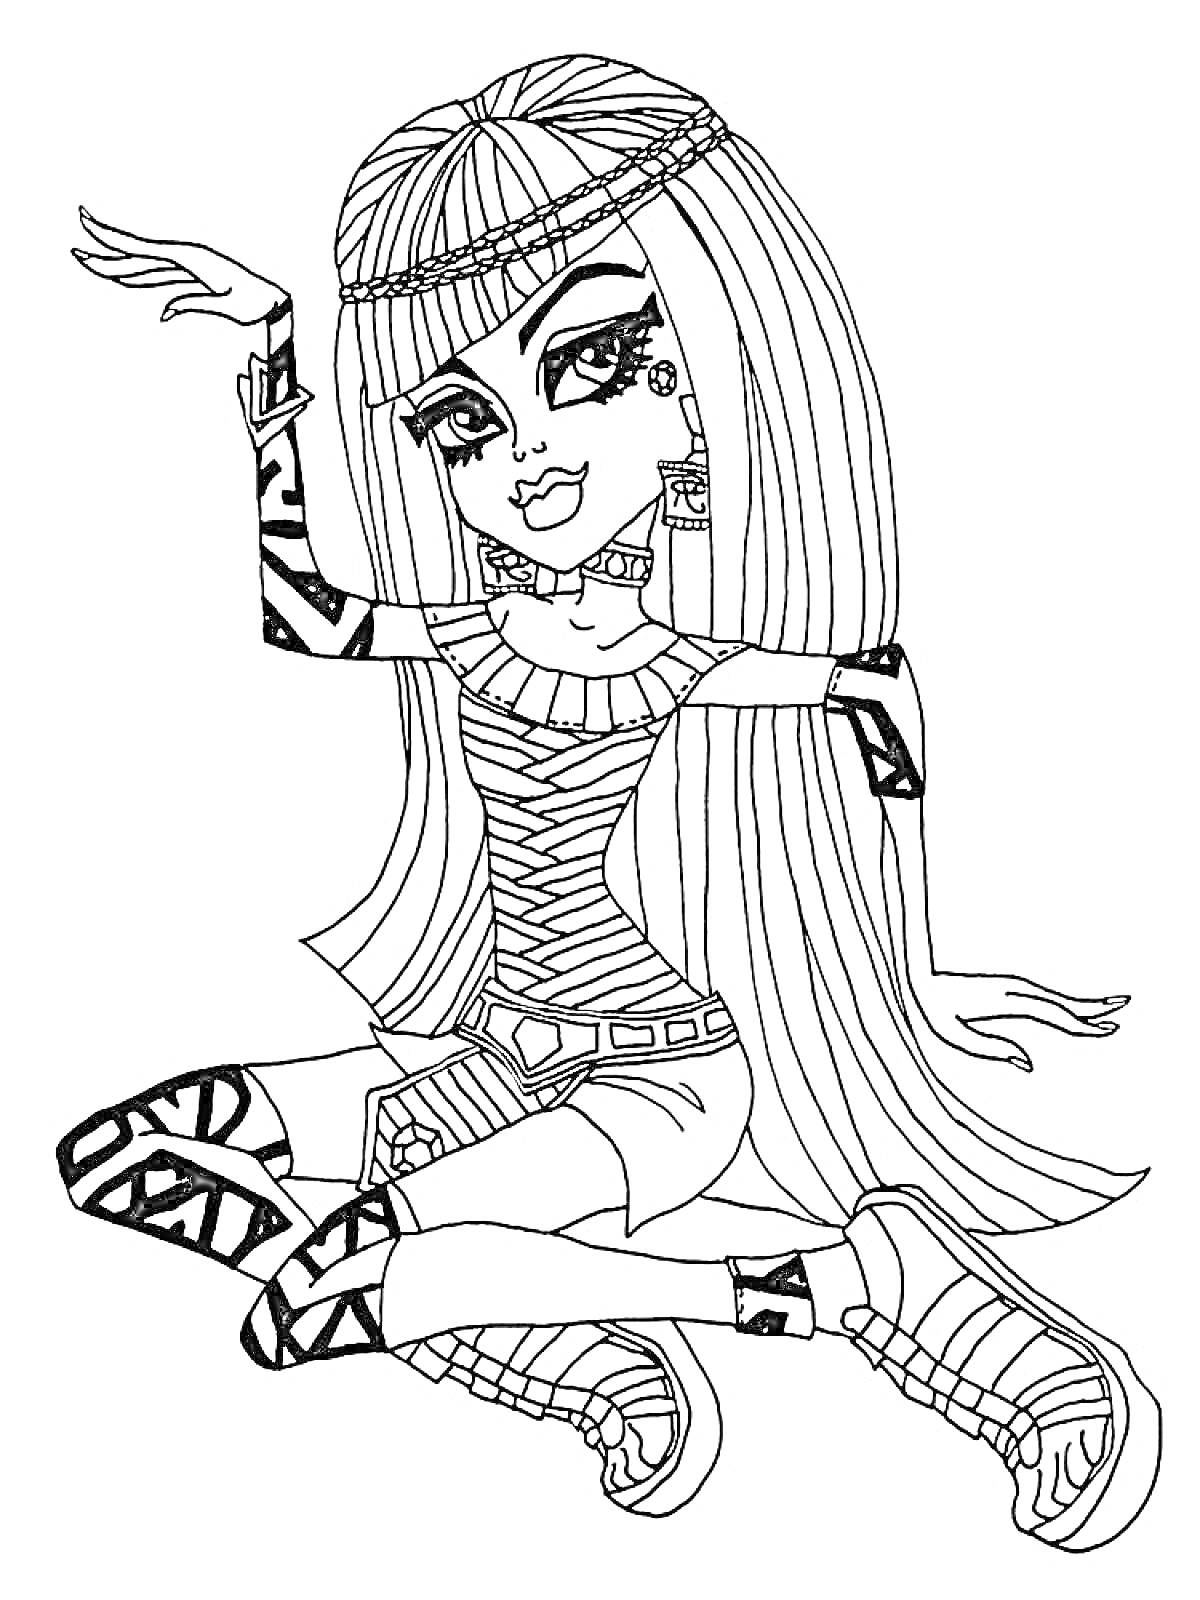 Раскраска Девушка из Монстр Хай с длинными волосами, одетая в короткие шорты, топ с узором, украшения и обувь с рисунками